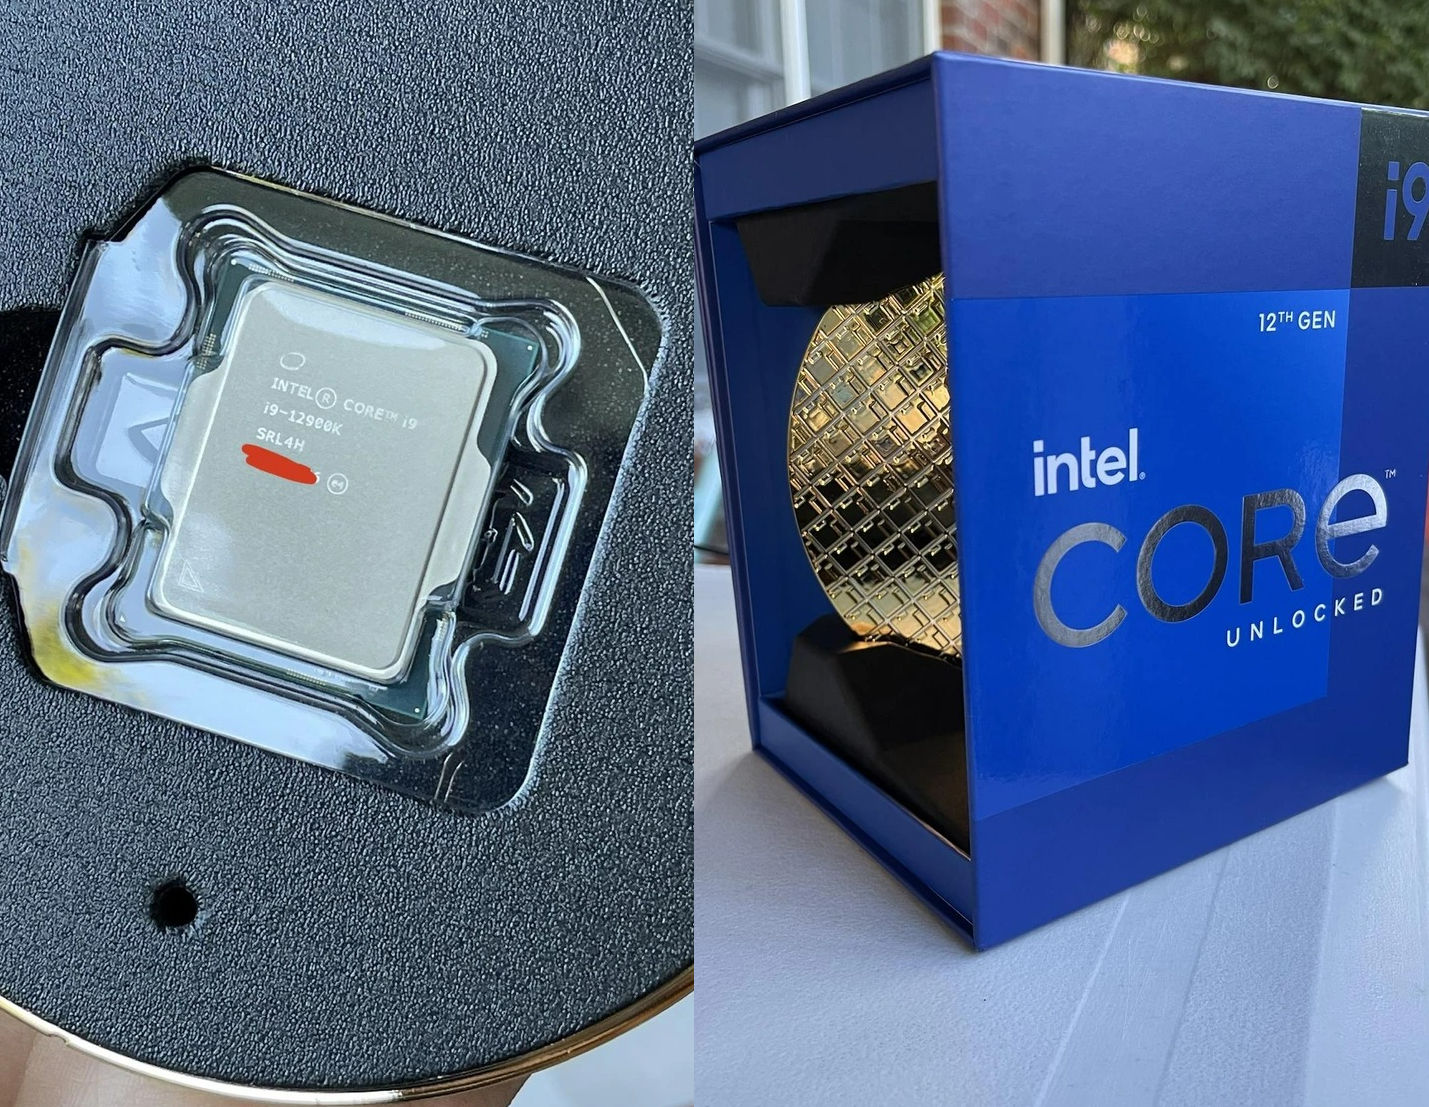 Intel-Core-i9-12900K-on-sale.jpg